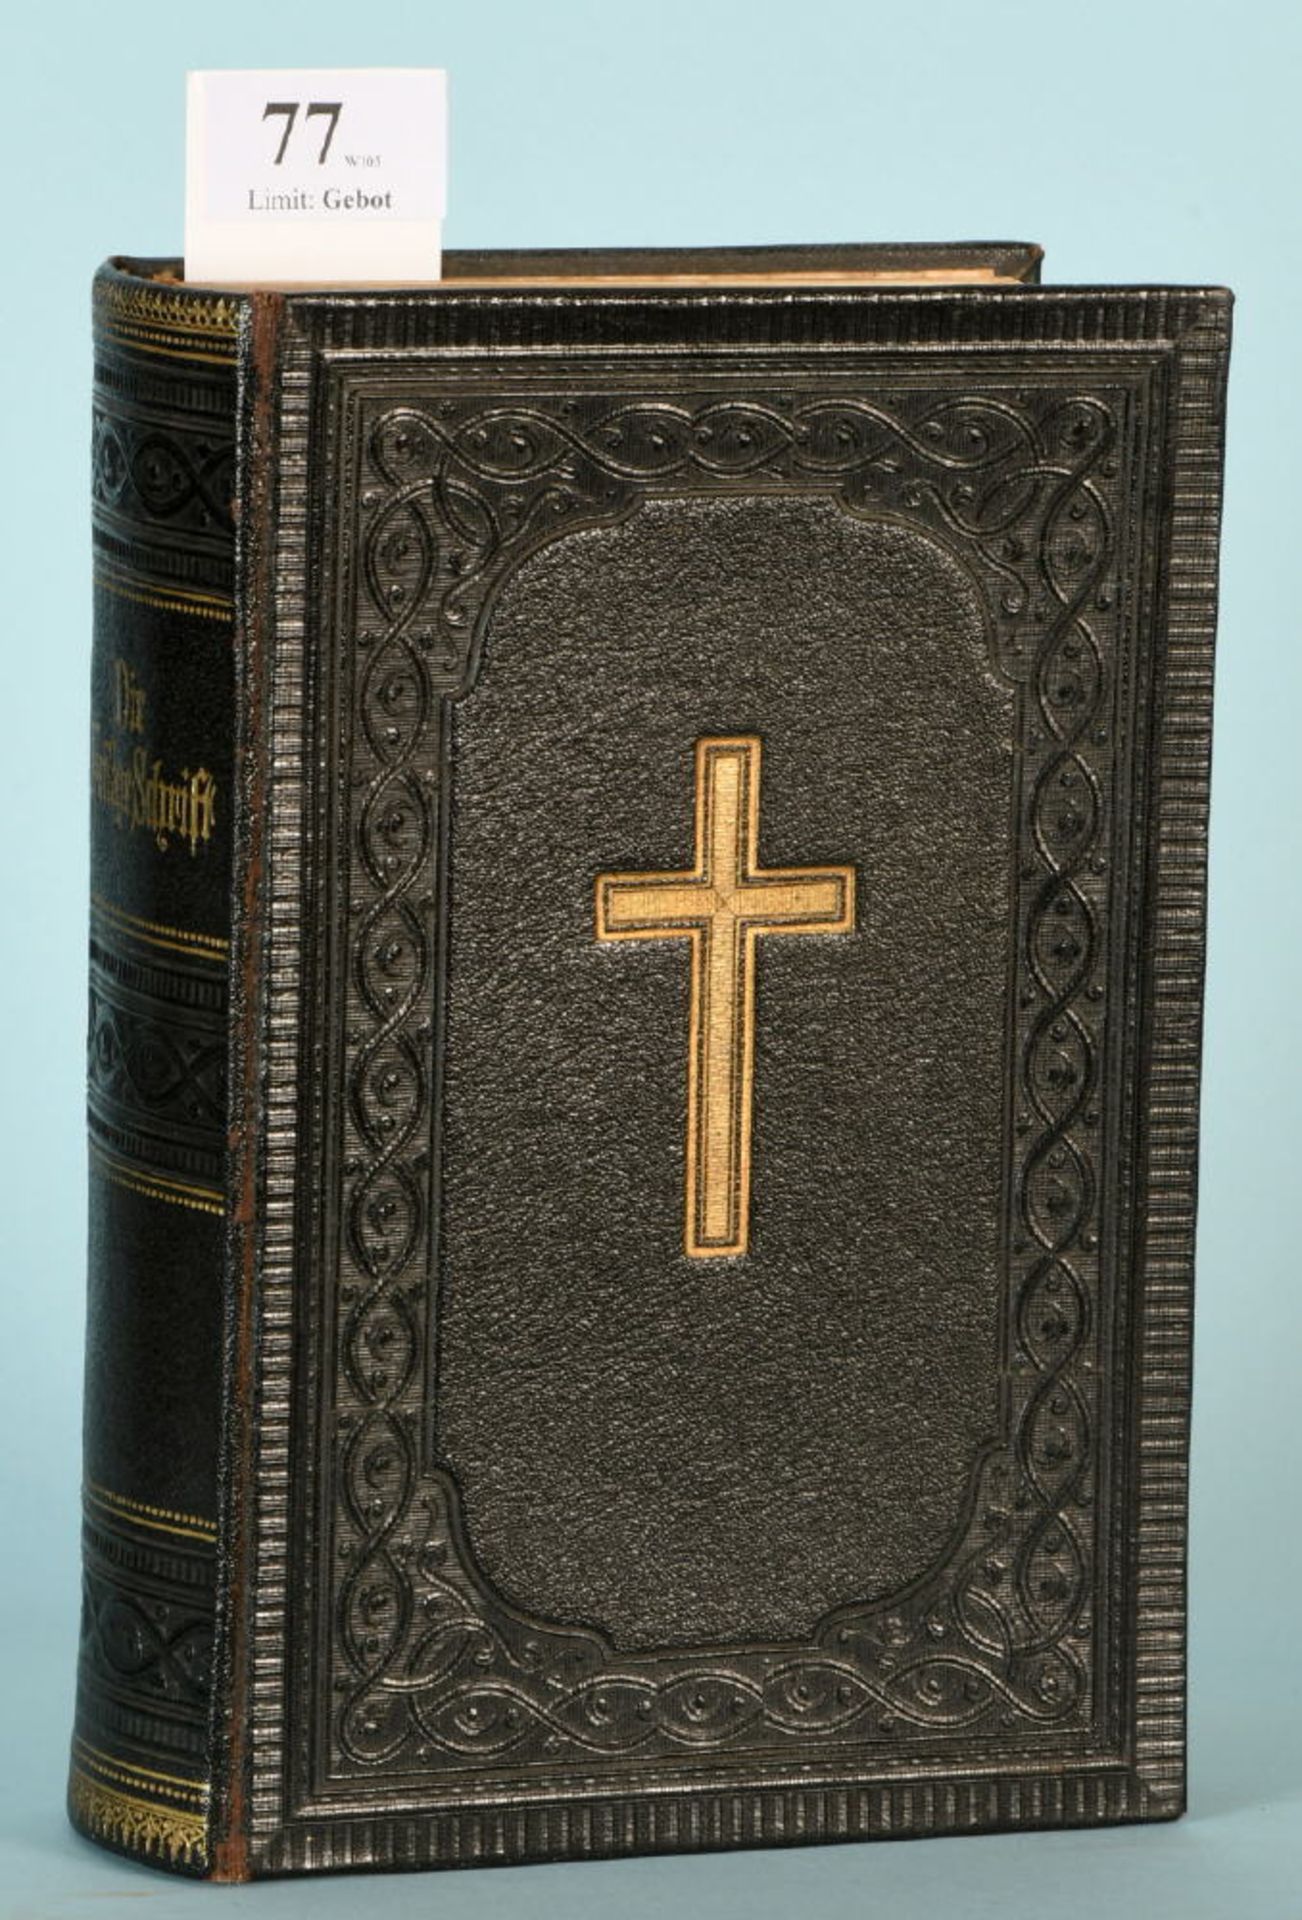 Luther, Martin "Die Bibel oder die ganze Hl. Schrift des AT und NT"